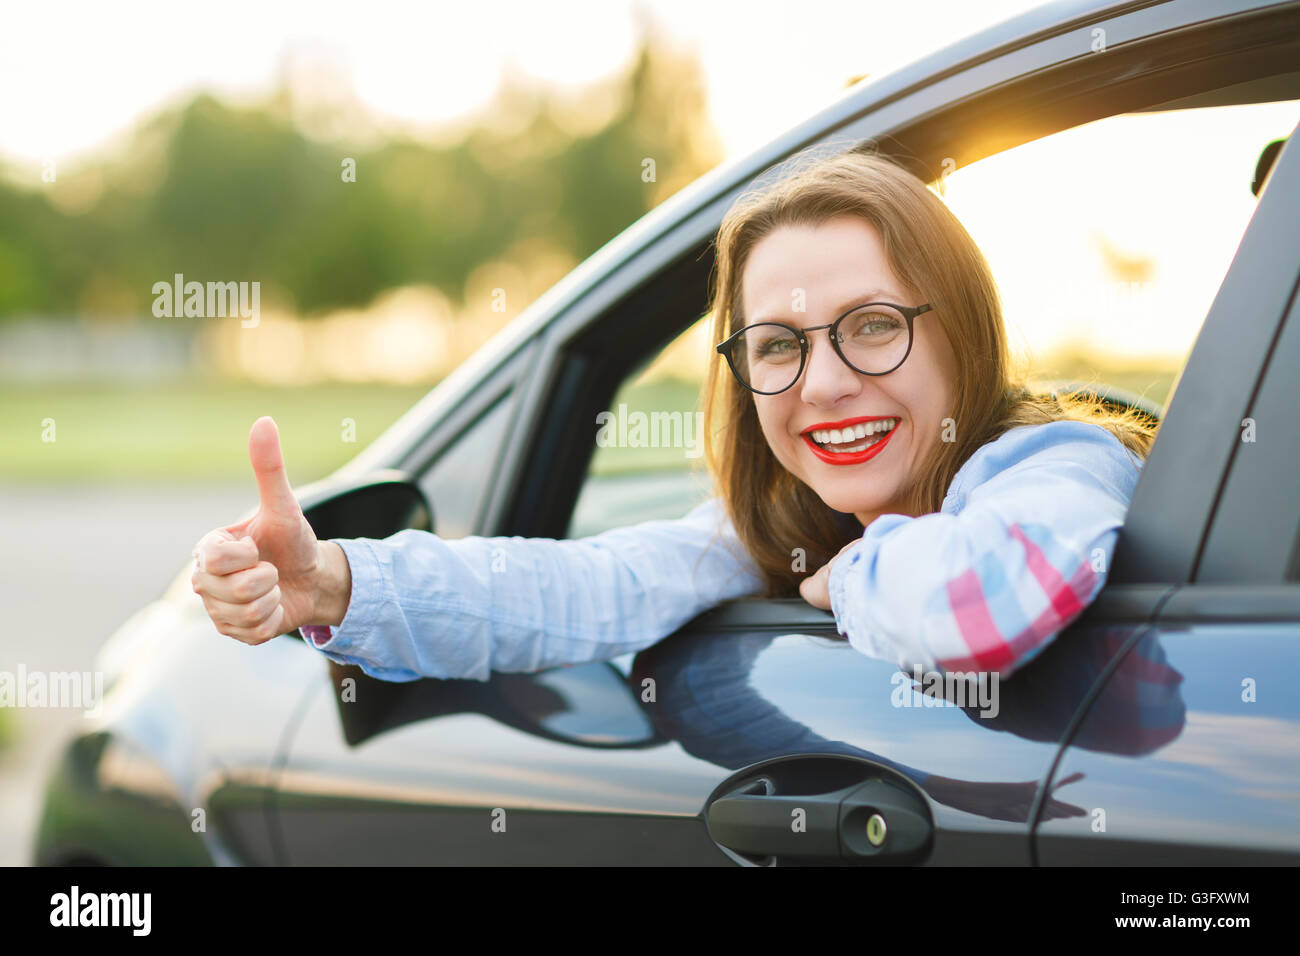 Glückliche Mädchen sitzen in einem Auto mit Daumen - Konzept für den Kauf eines Gebrauchtwagens oder einen Mietwagen Stockfoto